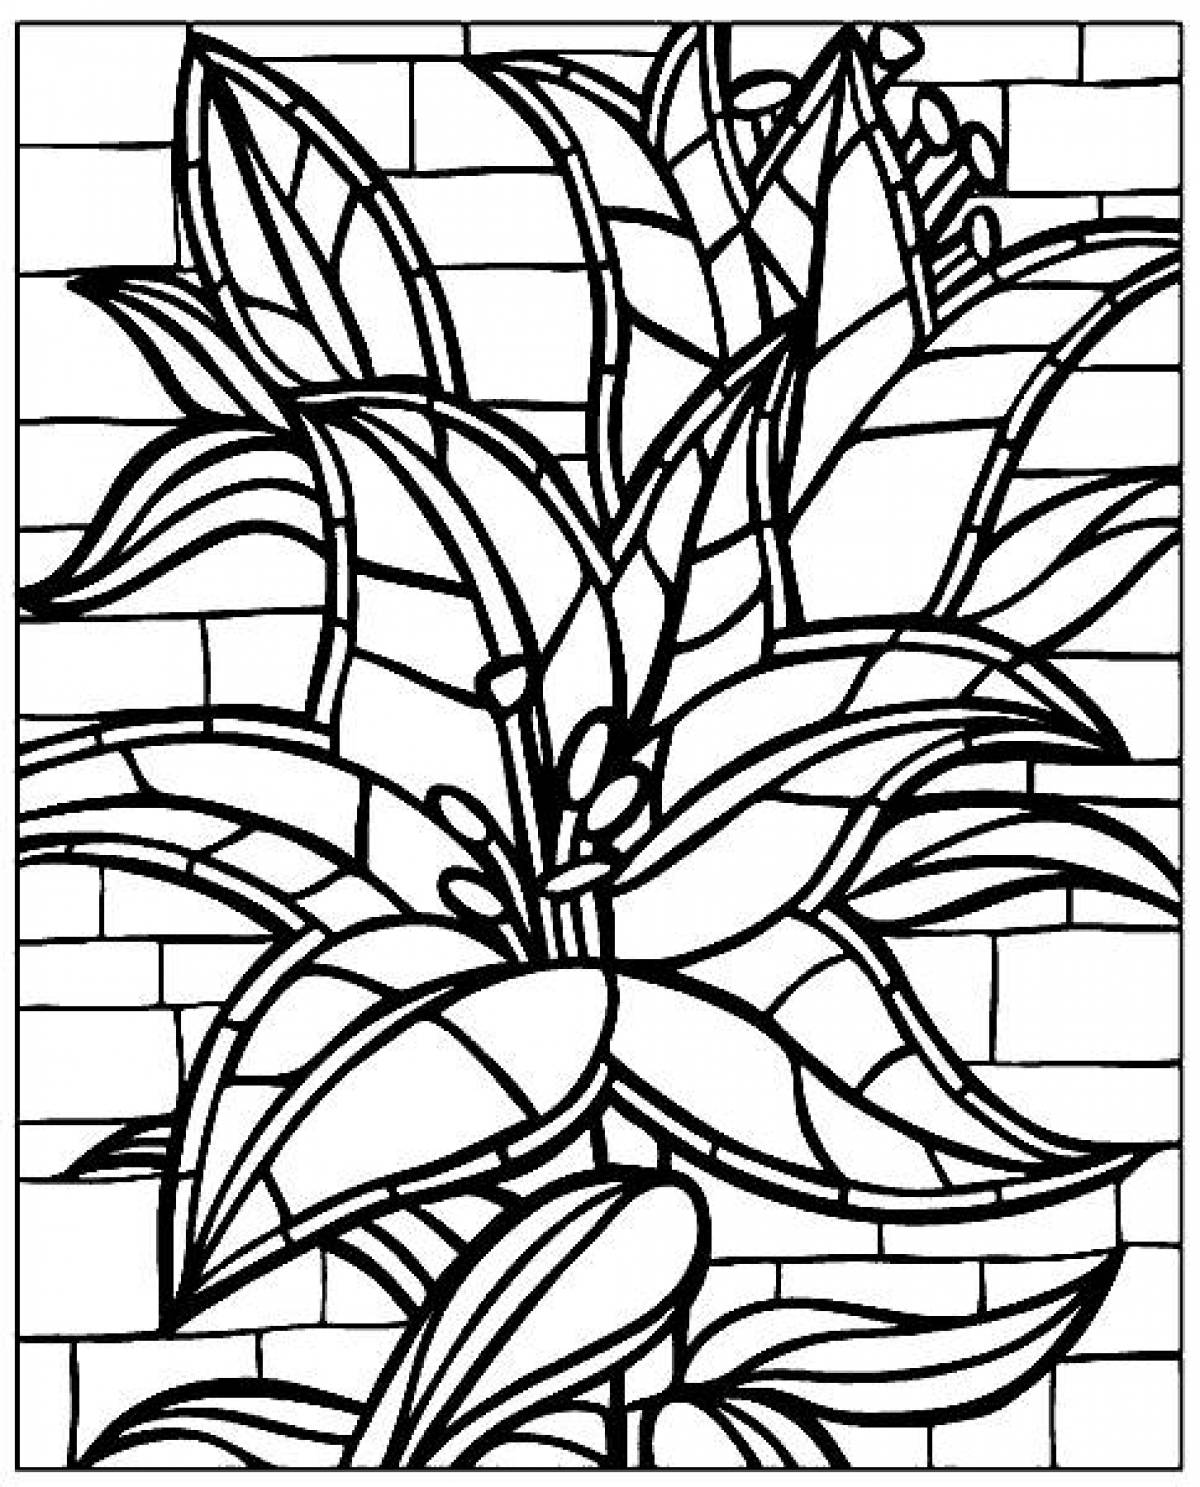 Lily mosaic